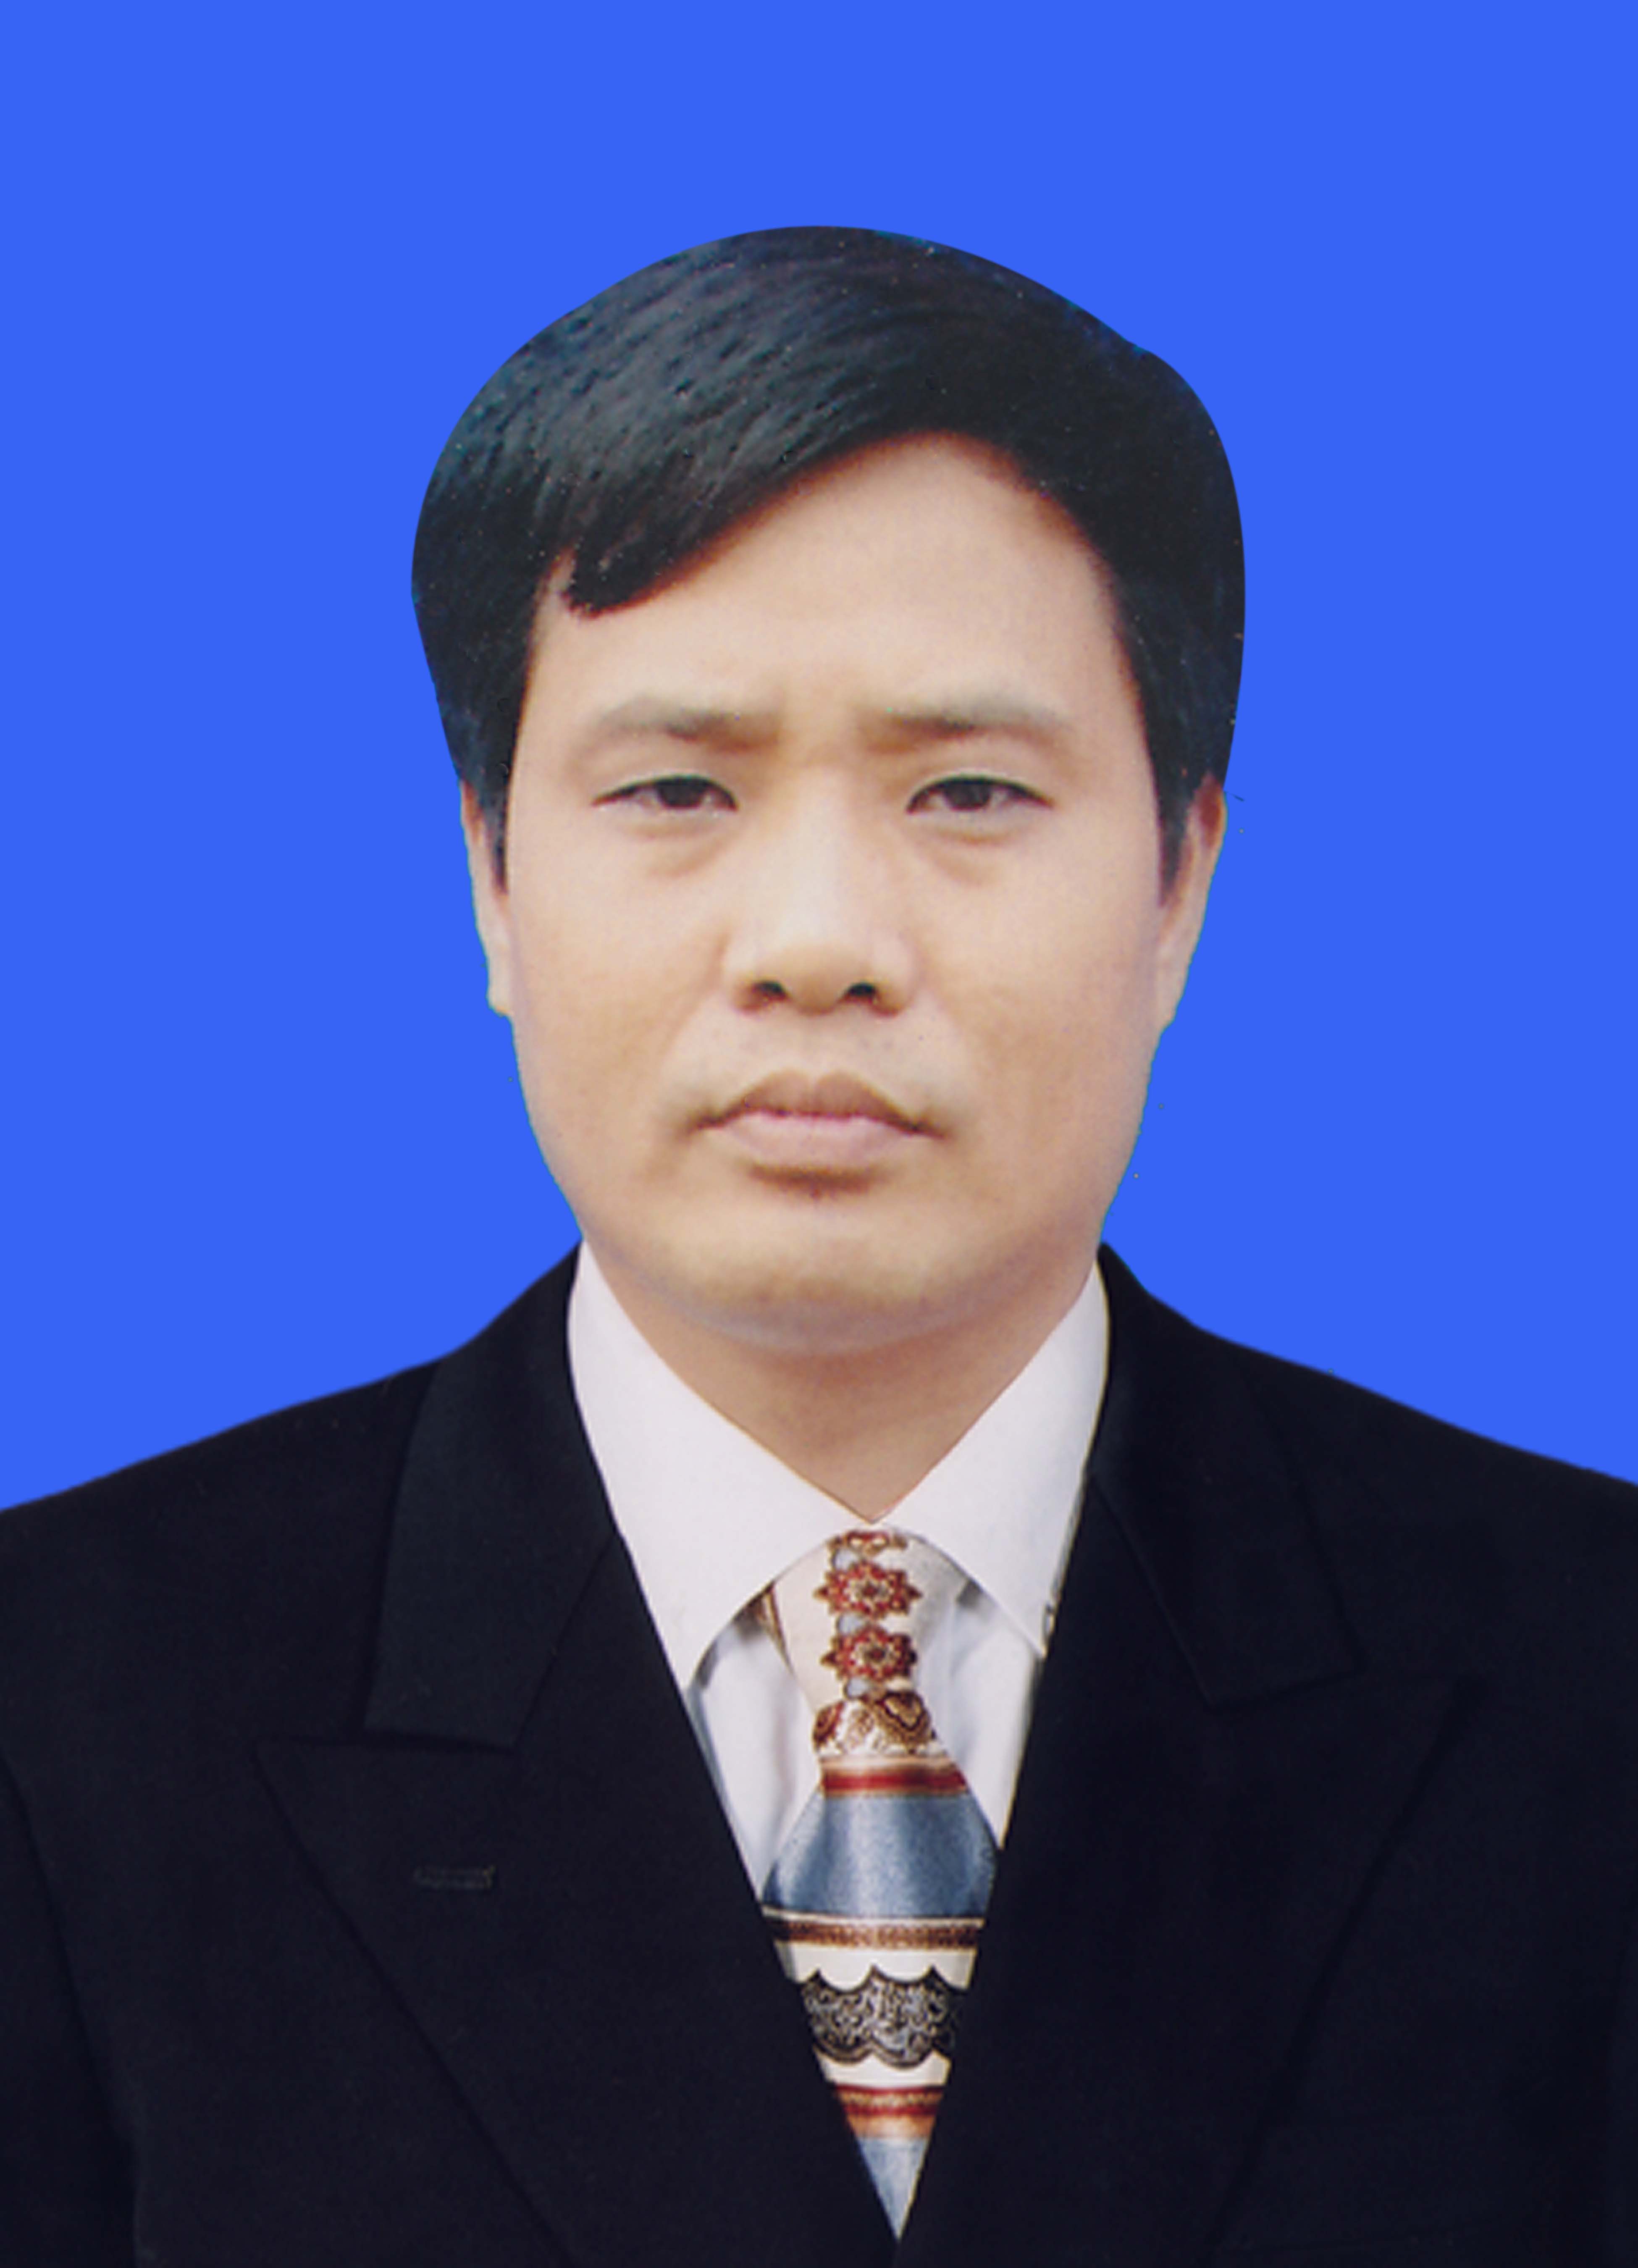 Nguyễn Hữu Hiệp